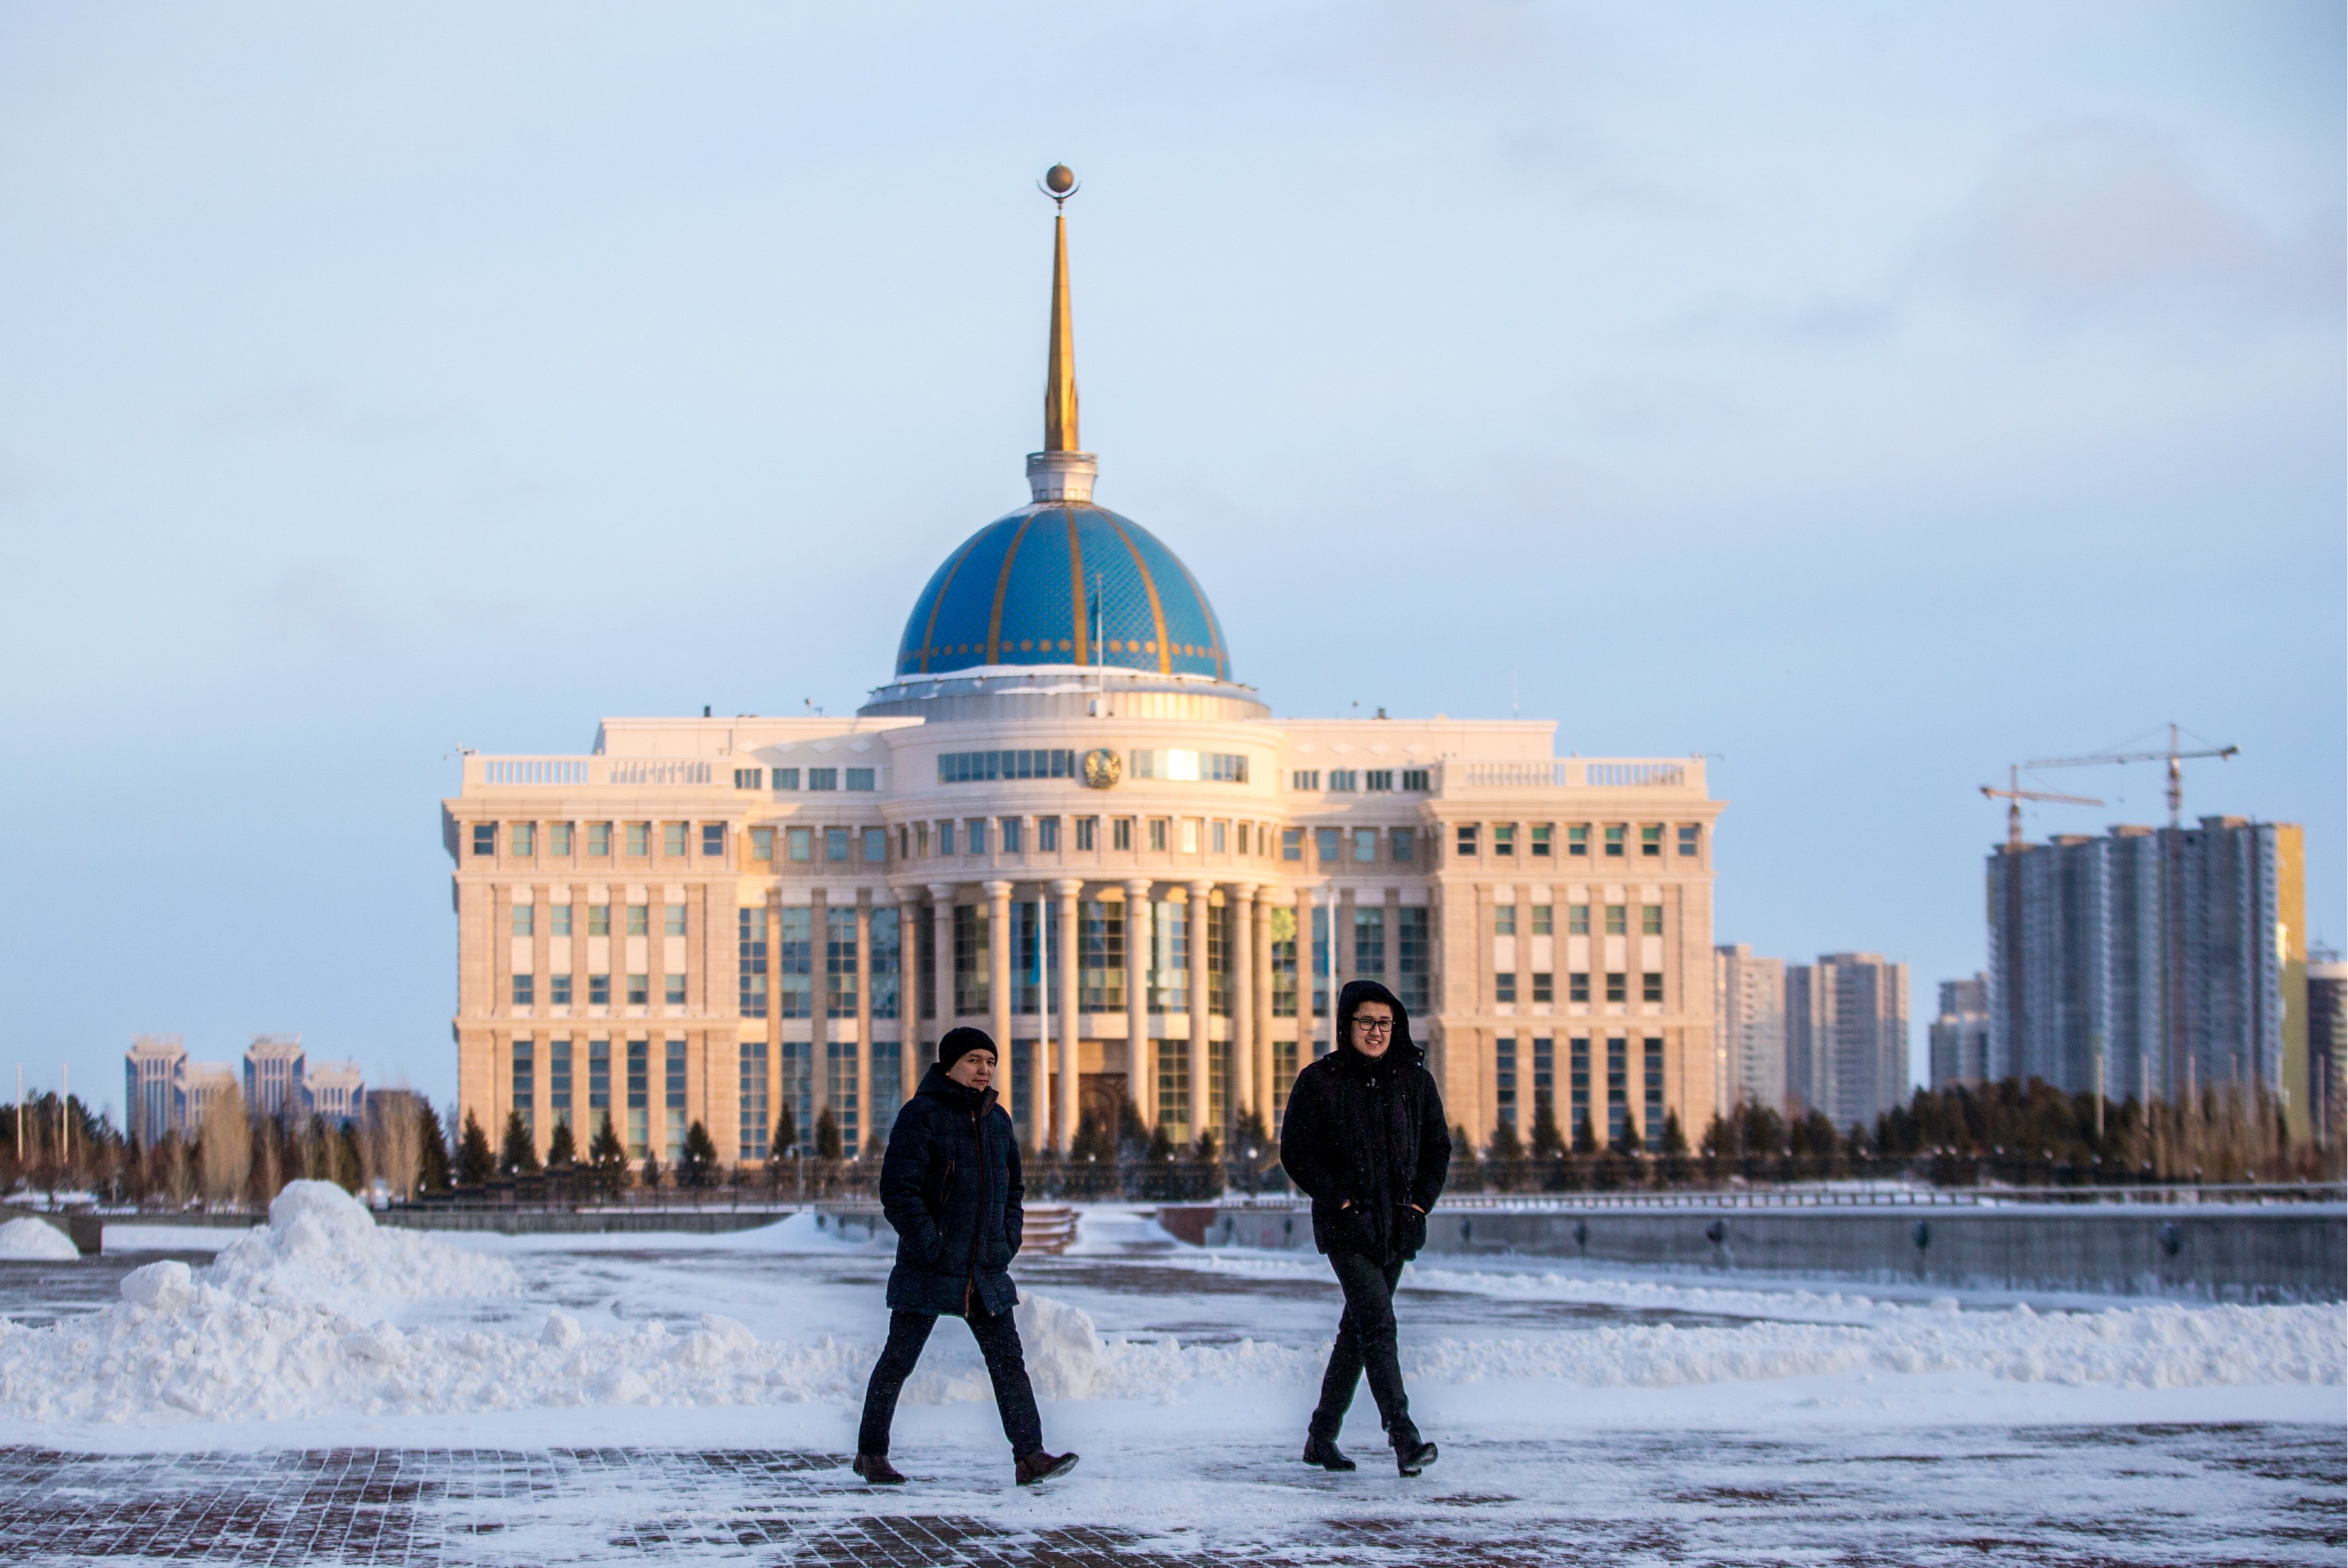 Astana, Kazakhstan in pictures